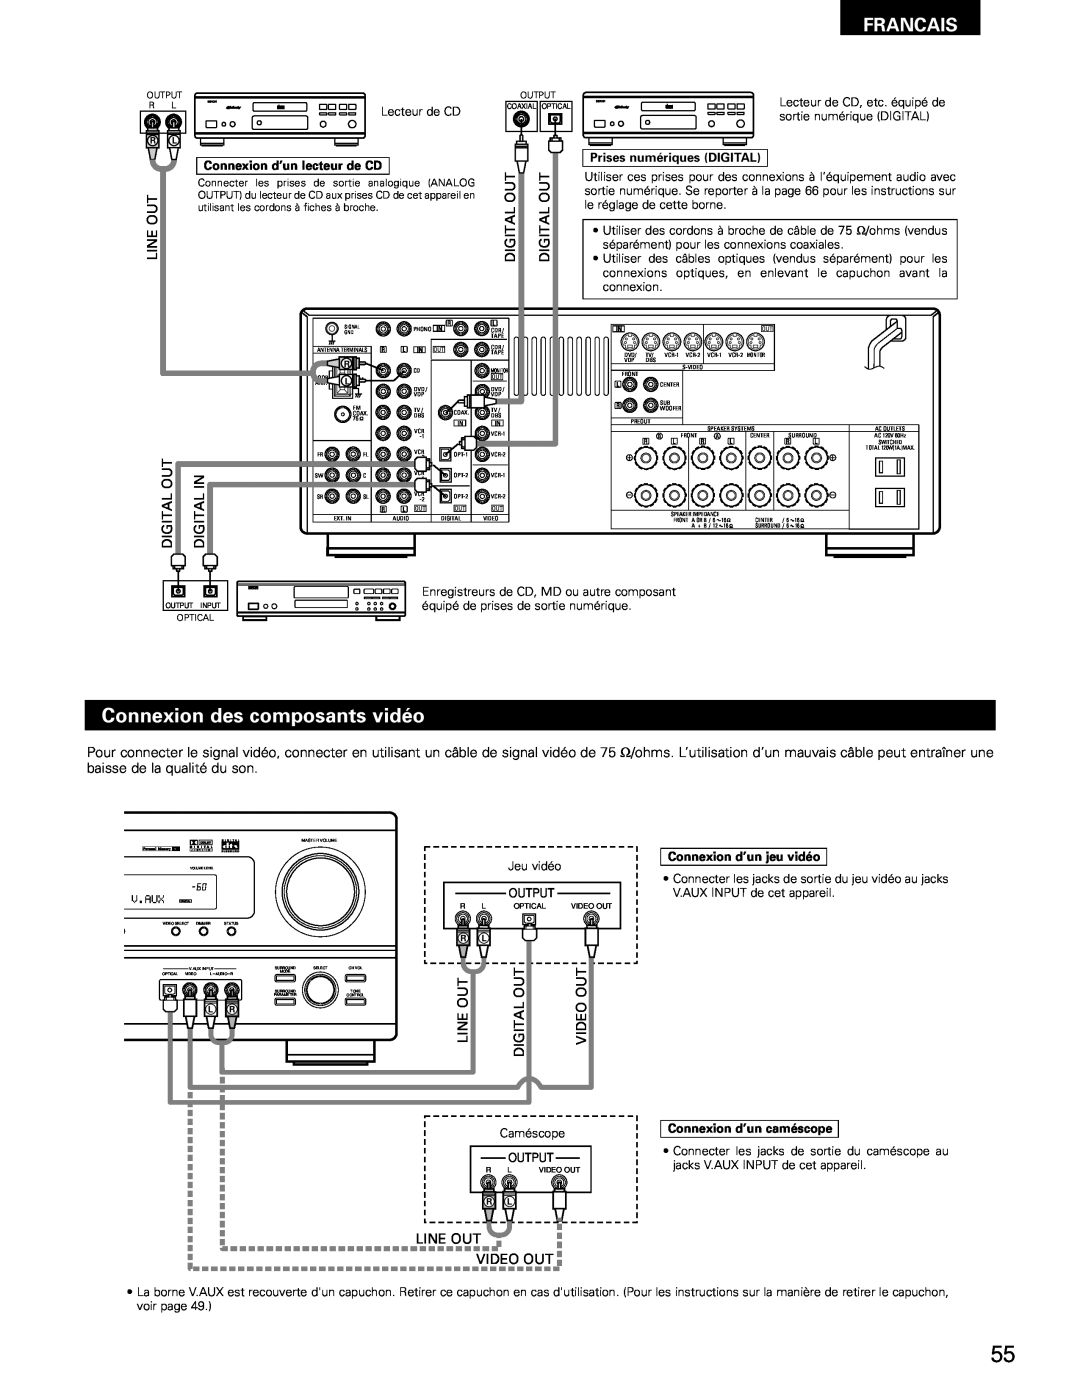 Denon AVR-1802/882 manual Connexion des composants vidéo, Francais 